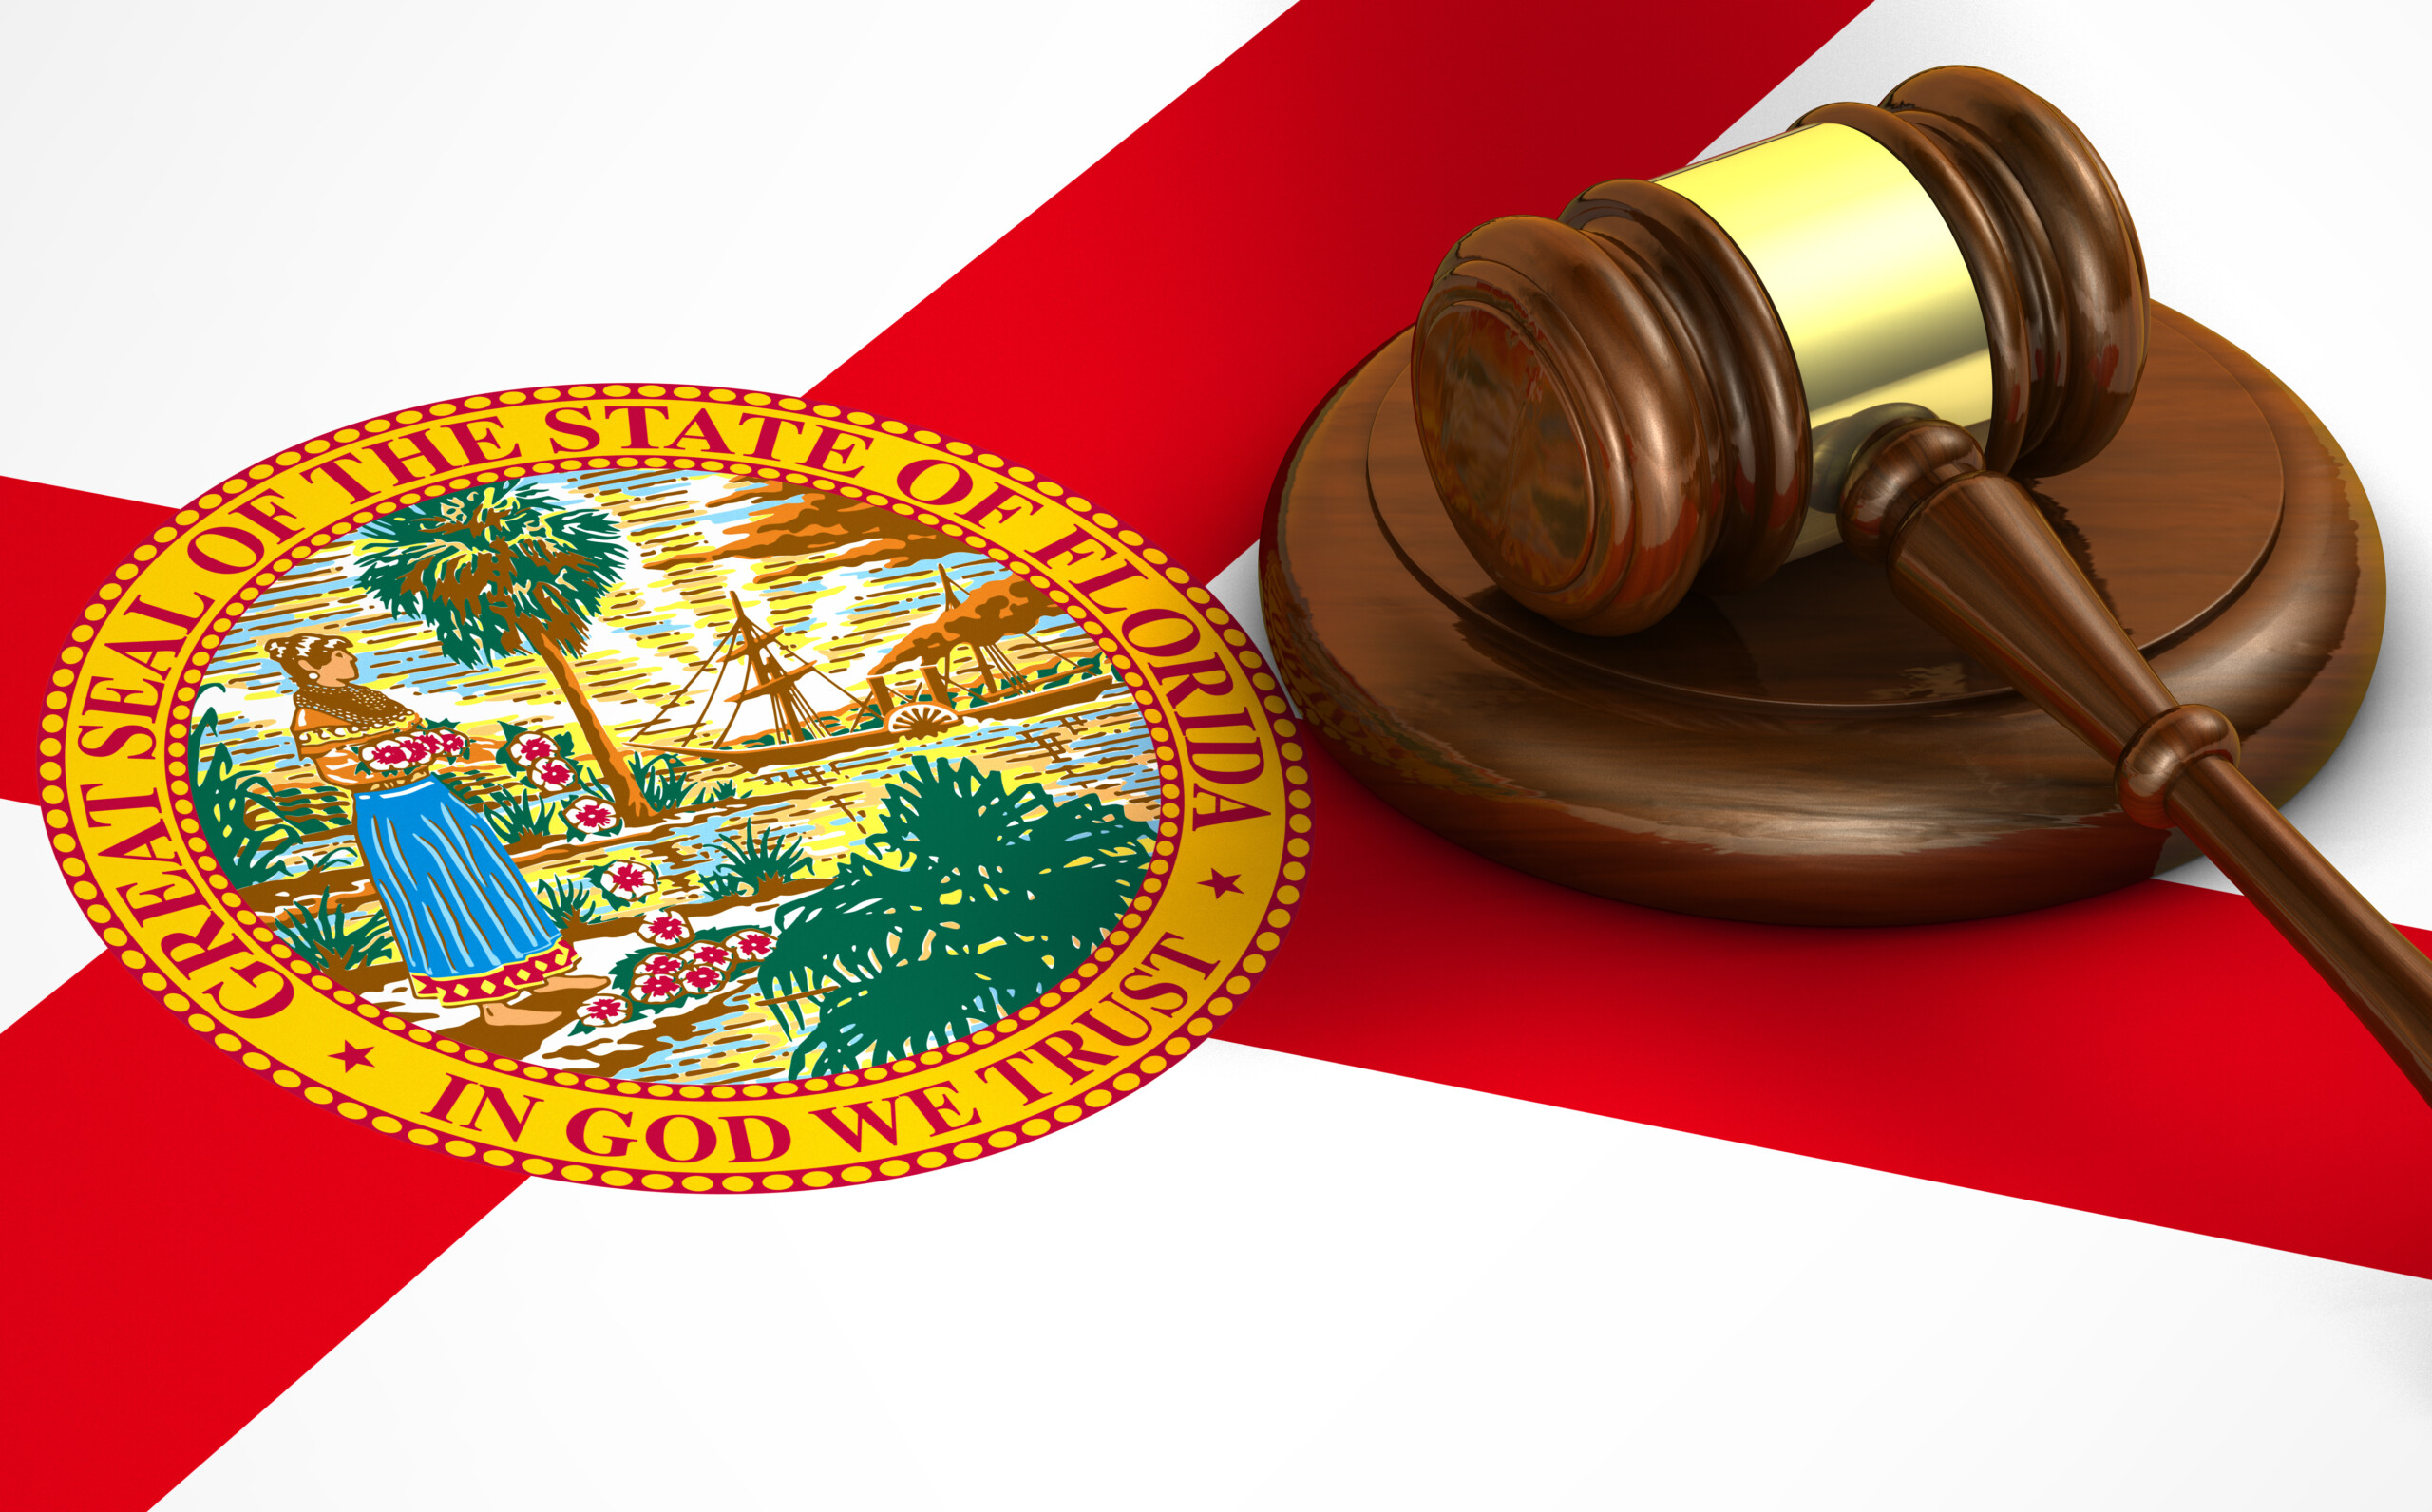 Prawo stanu Floryda USA, kodeks, system prawny i koncepcja wymiaru sprawiedliwości z trójwymiarowym renderowaniem młotka na fladze Florydy w tle., licencja: Shutterstock/By